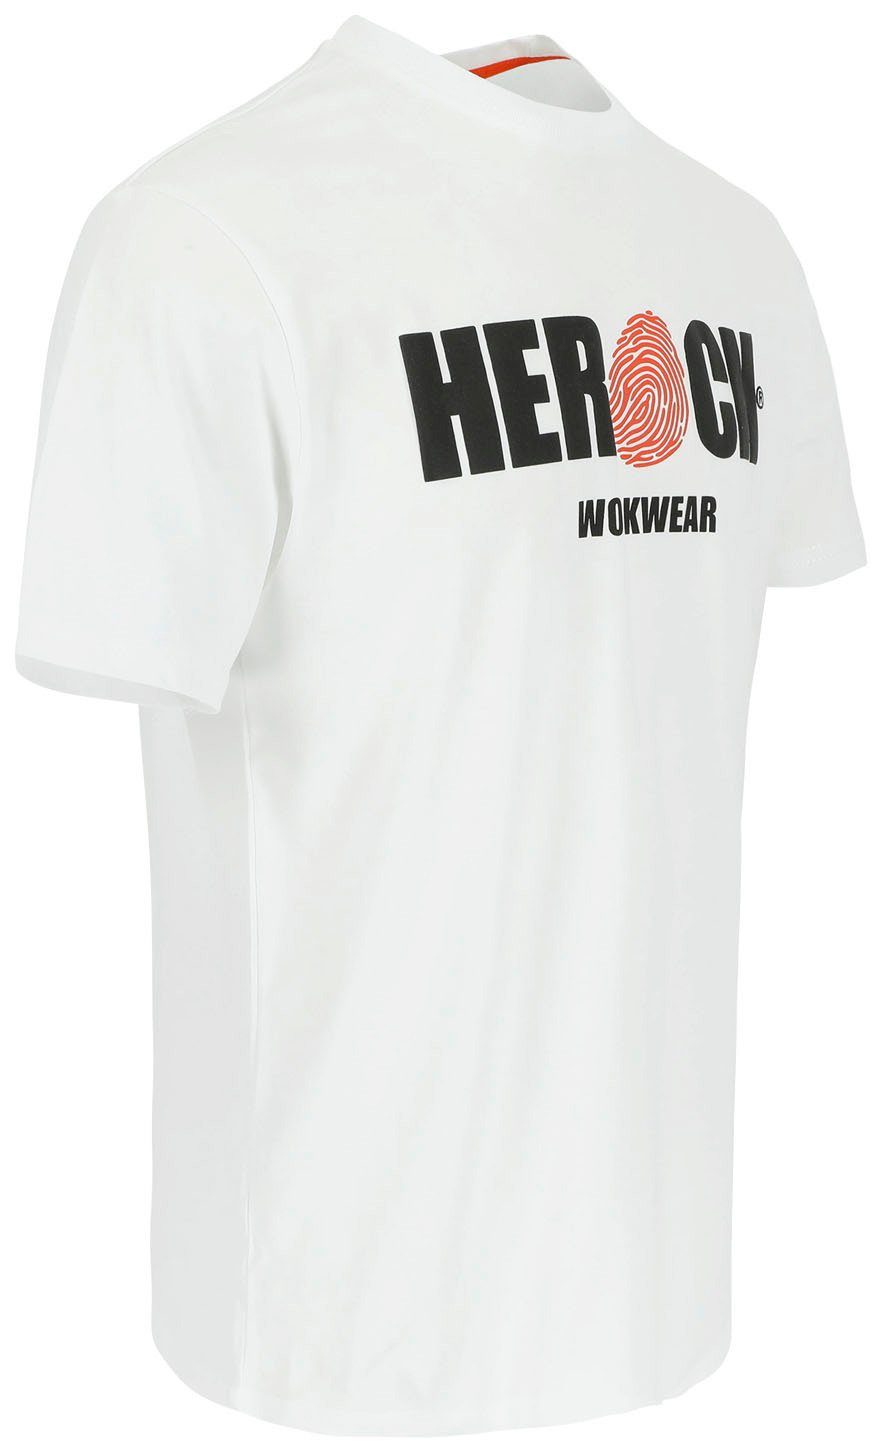 Herock T-Shirt ENI Baumwolle, Rundhals, Tragegefühl mit Herock®-Aufdruck, weiß angenehmes